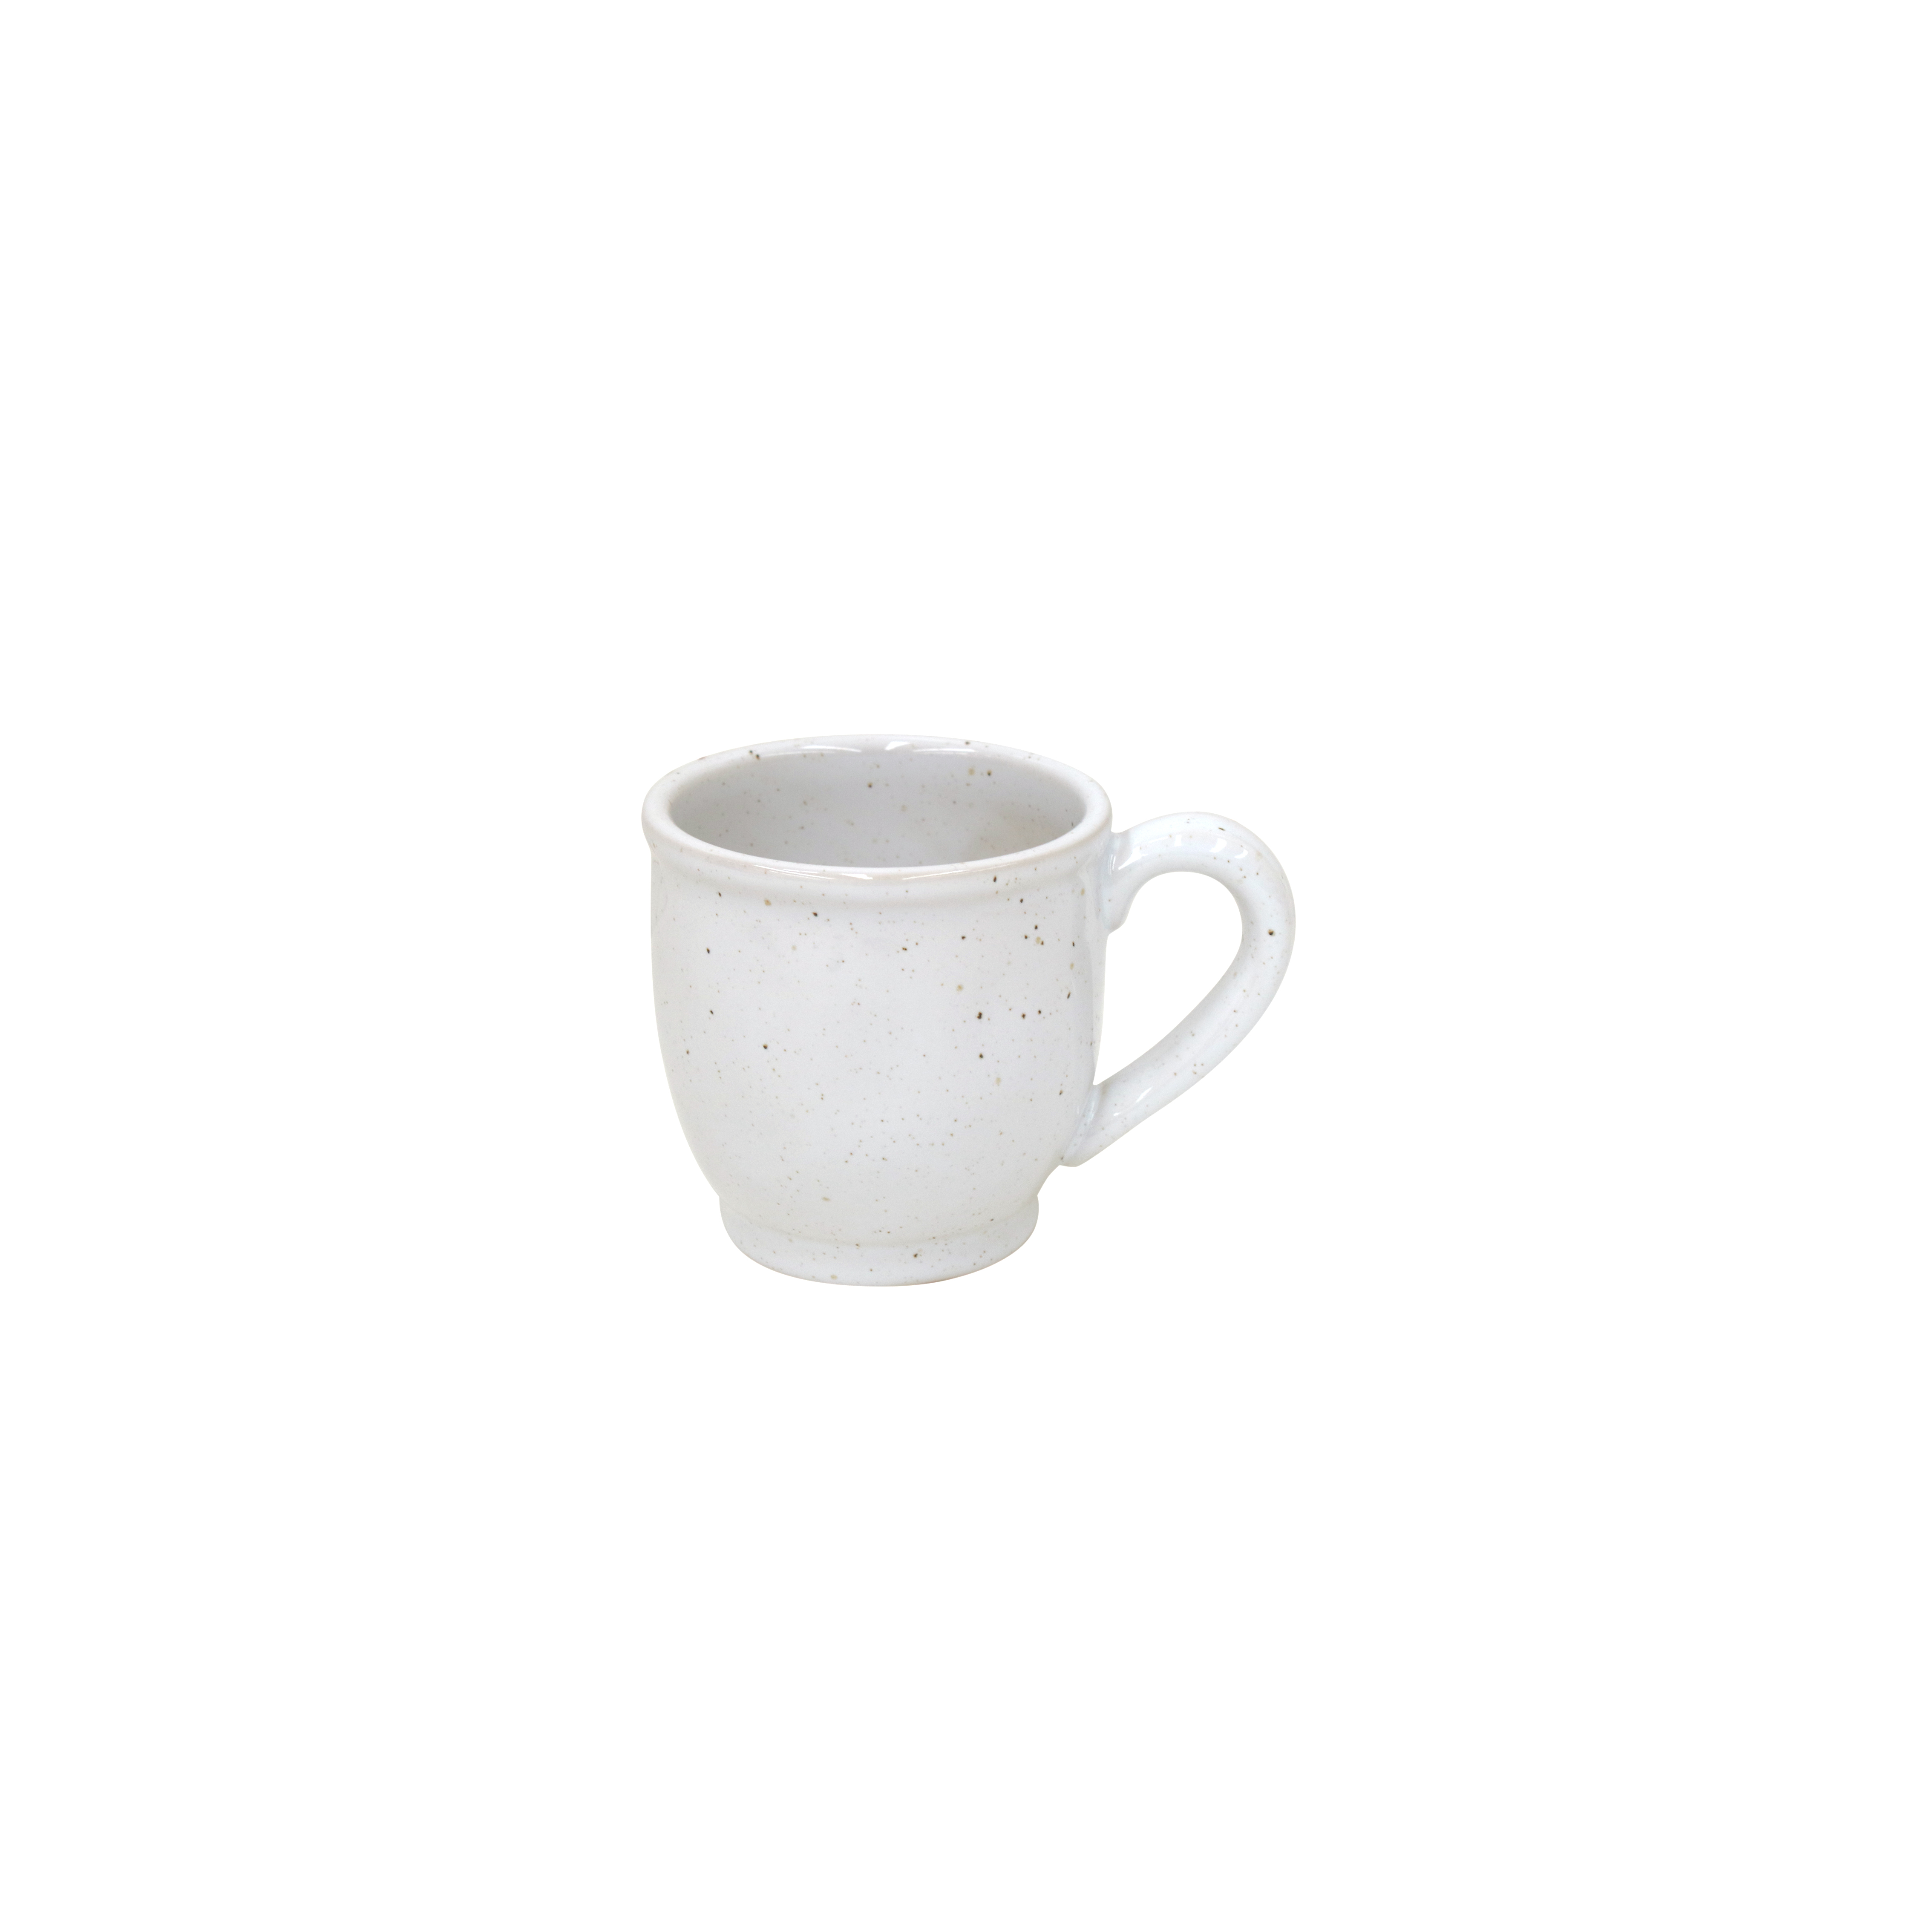 Fattoria White Mug 0.35l Gift